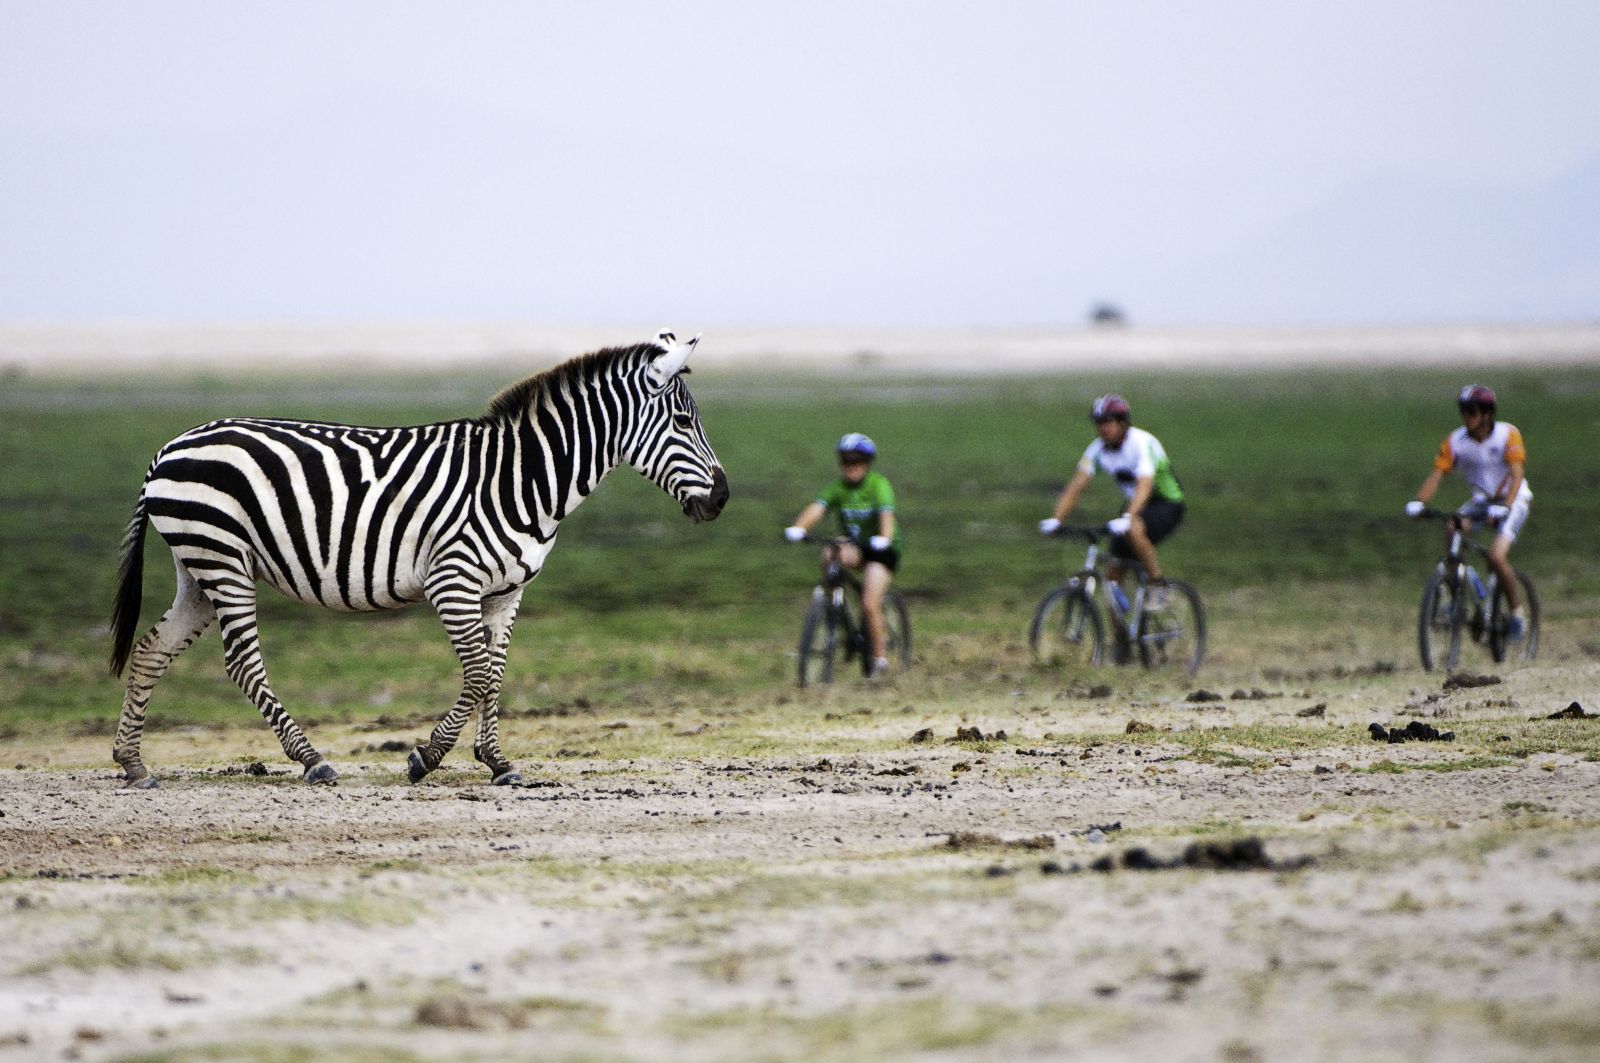 Cycling safari at Ol Donyo Wuas in Kenya 